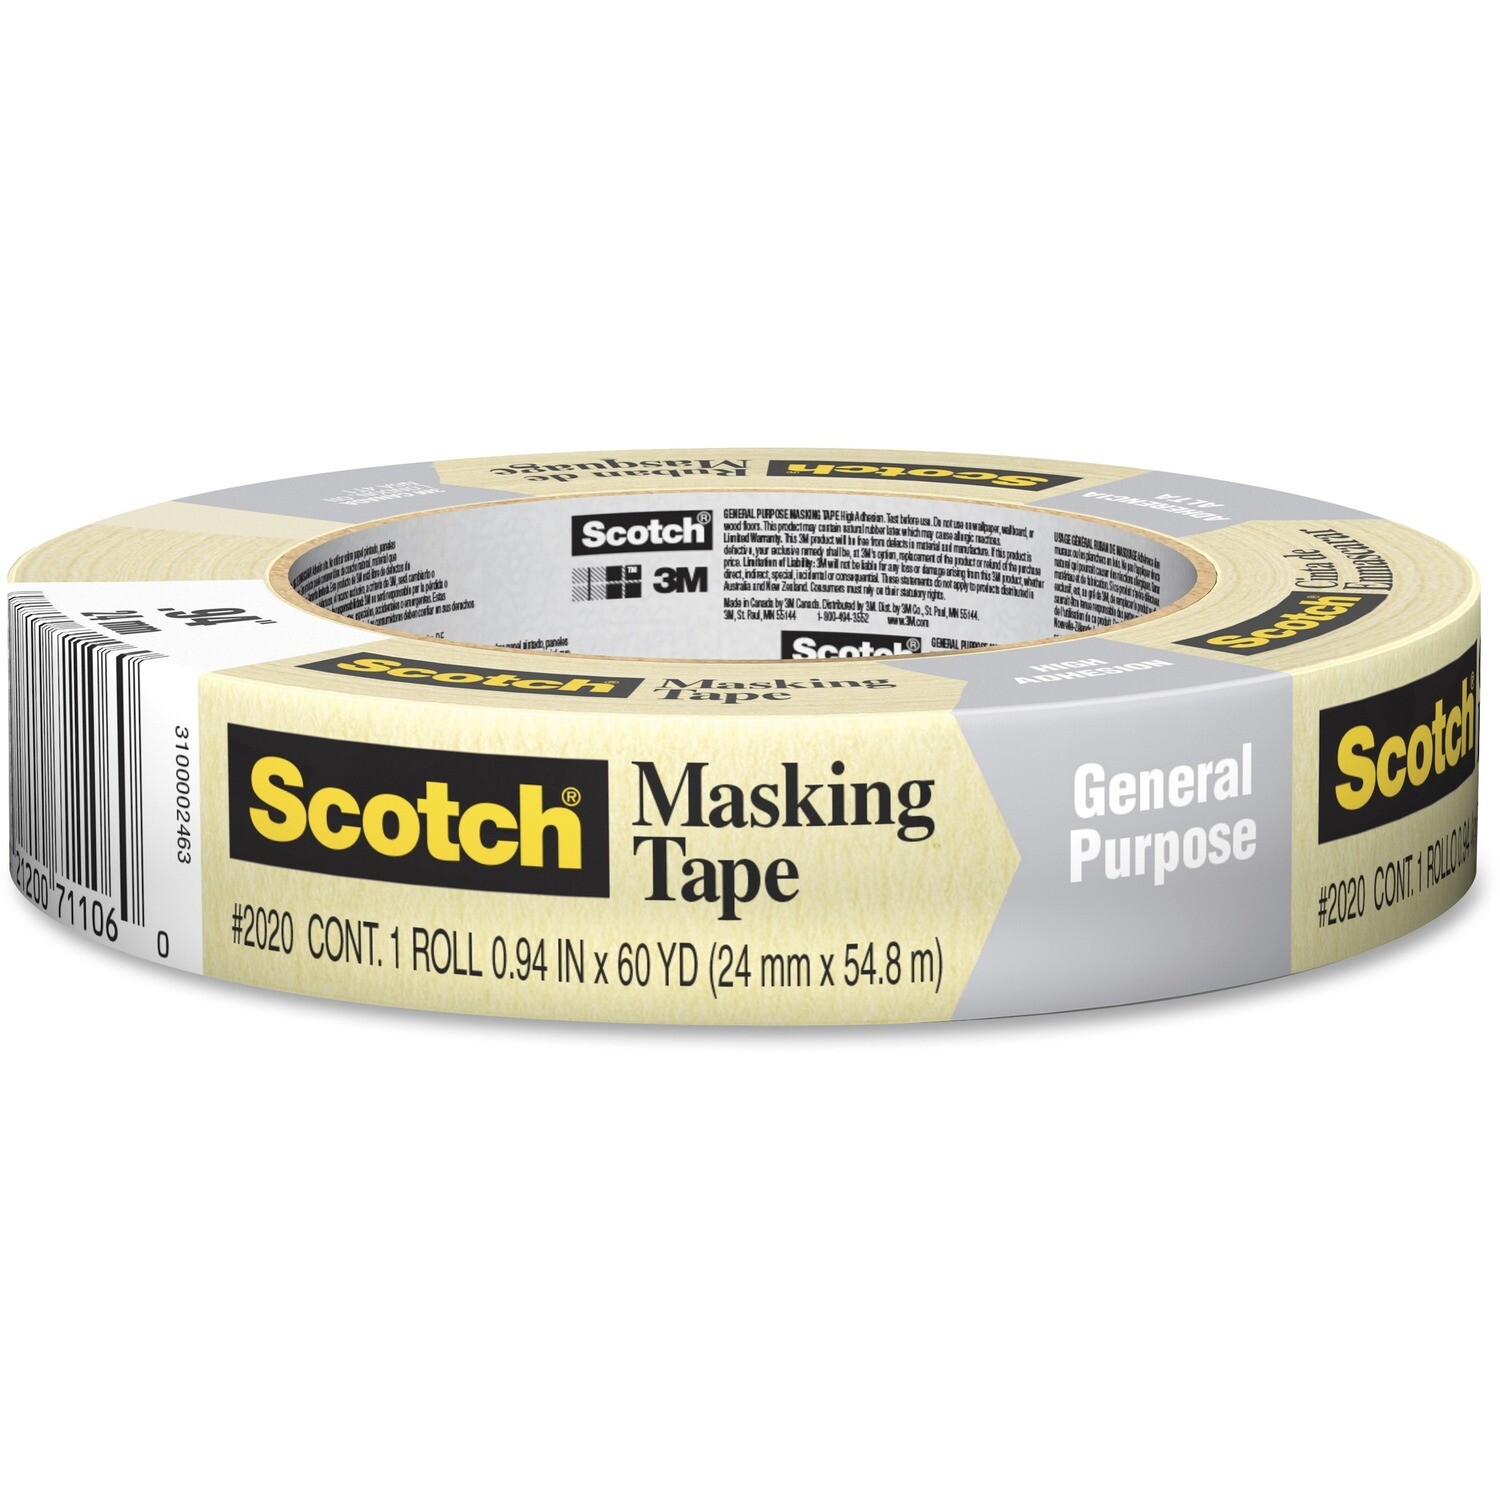 Tape, Masking, All Purpose 24mm x 55m, Scotch